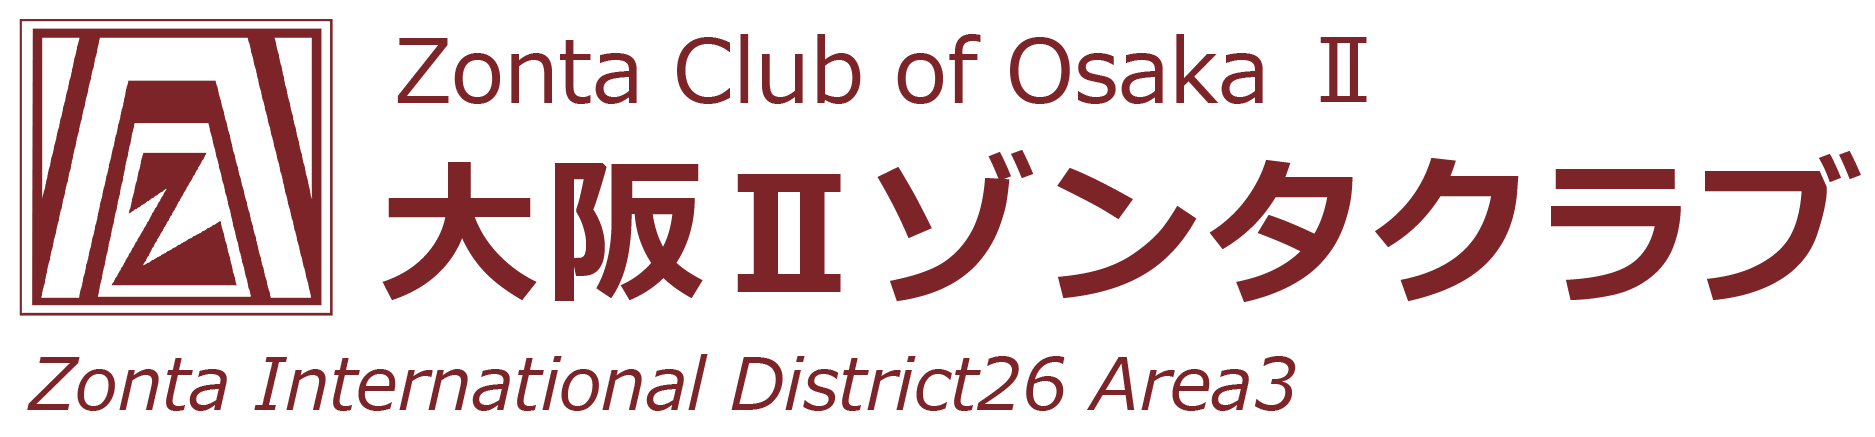 大阪Ⅱゾンタクラブ